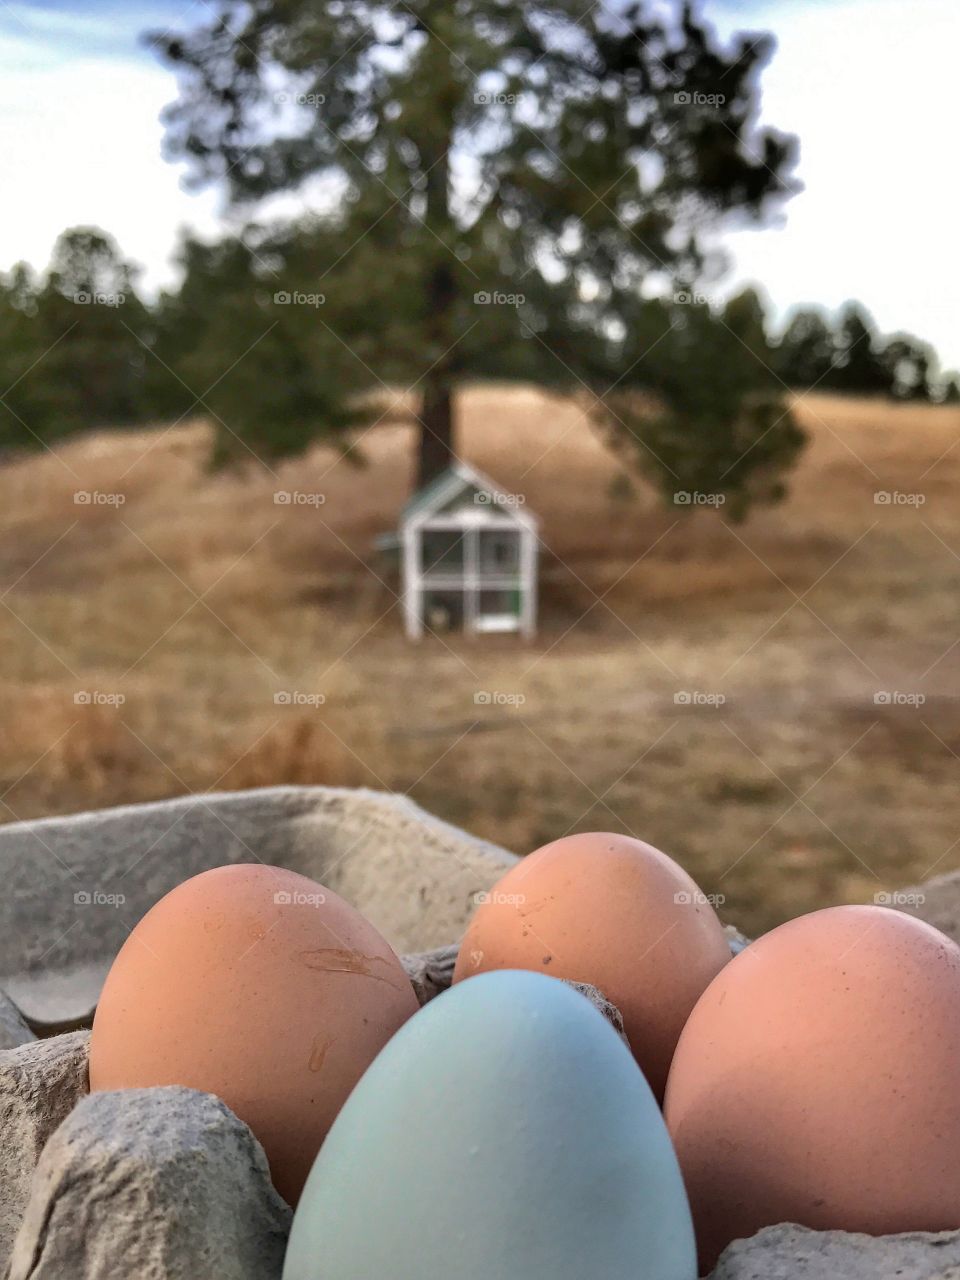 Farm fresh eggs.